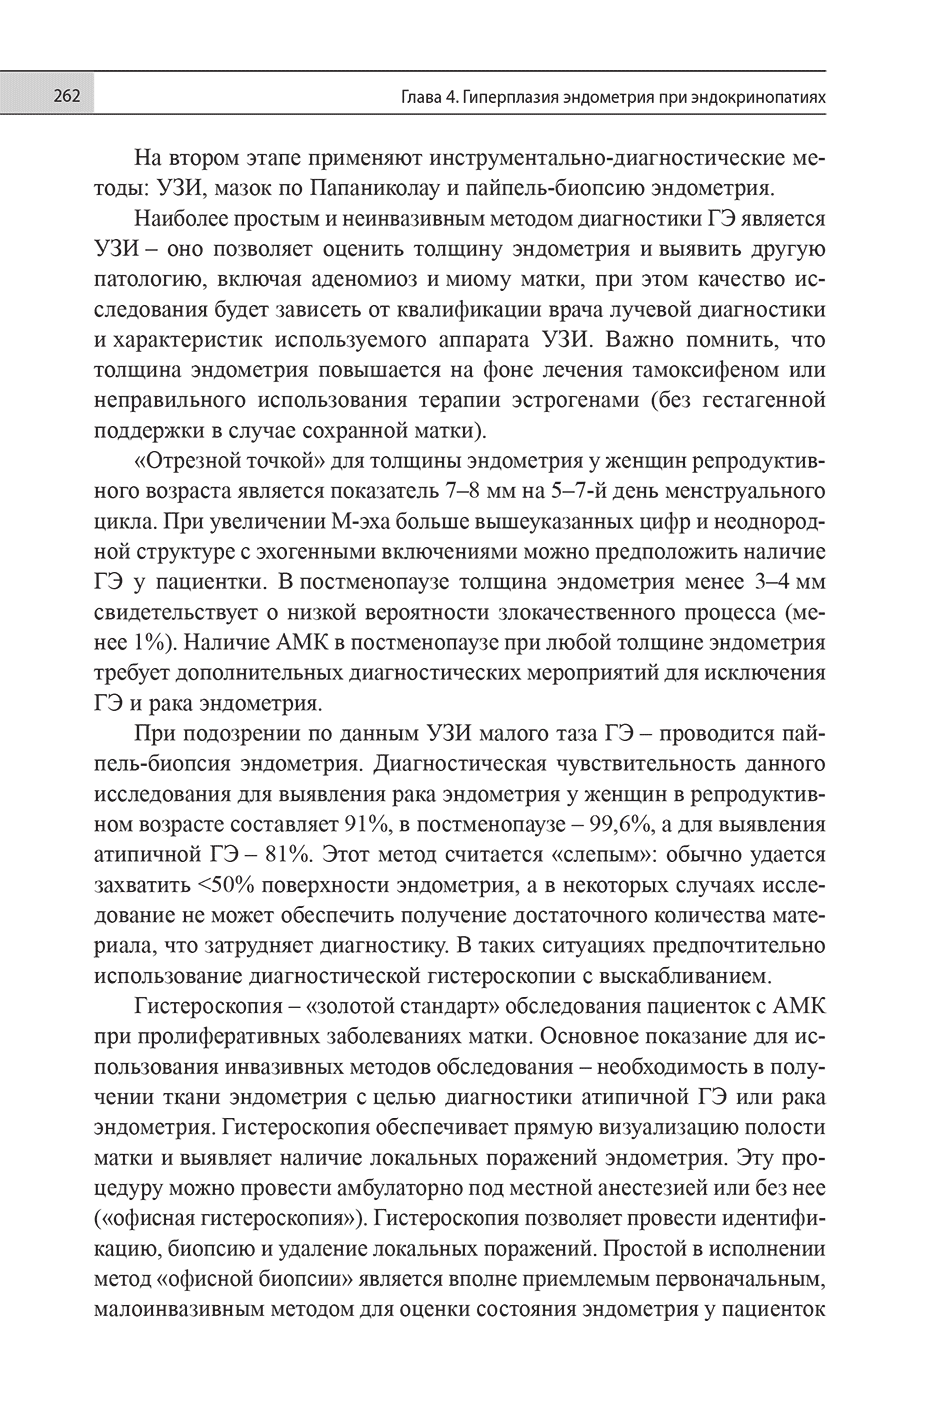 Пример страницы из книги "Эндокринная гинекология: избранные семинары" - Е. Н. Андреева, О. Р. Григорян